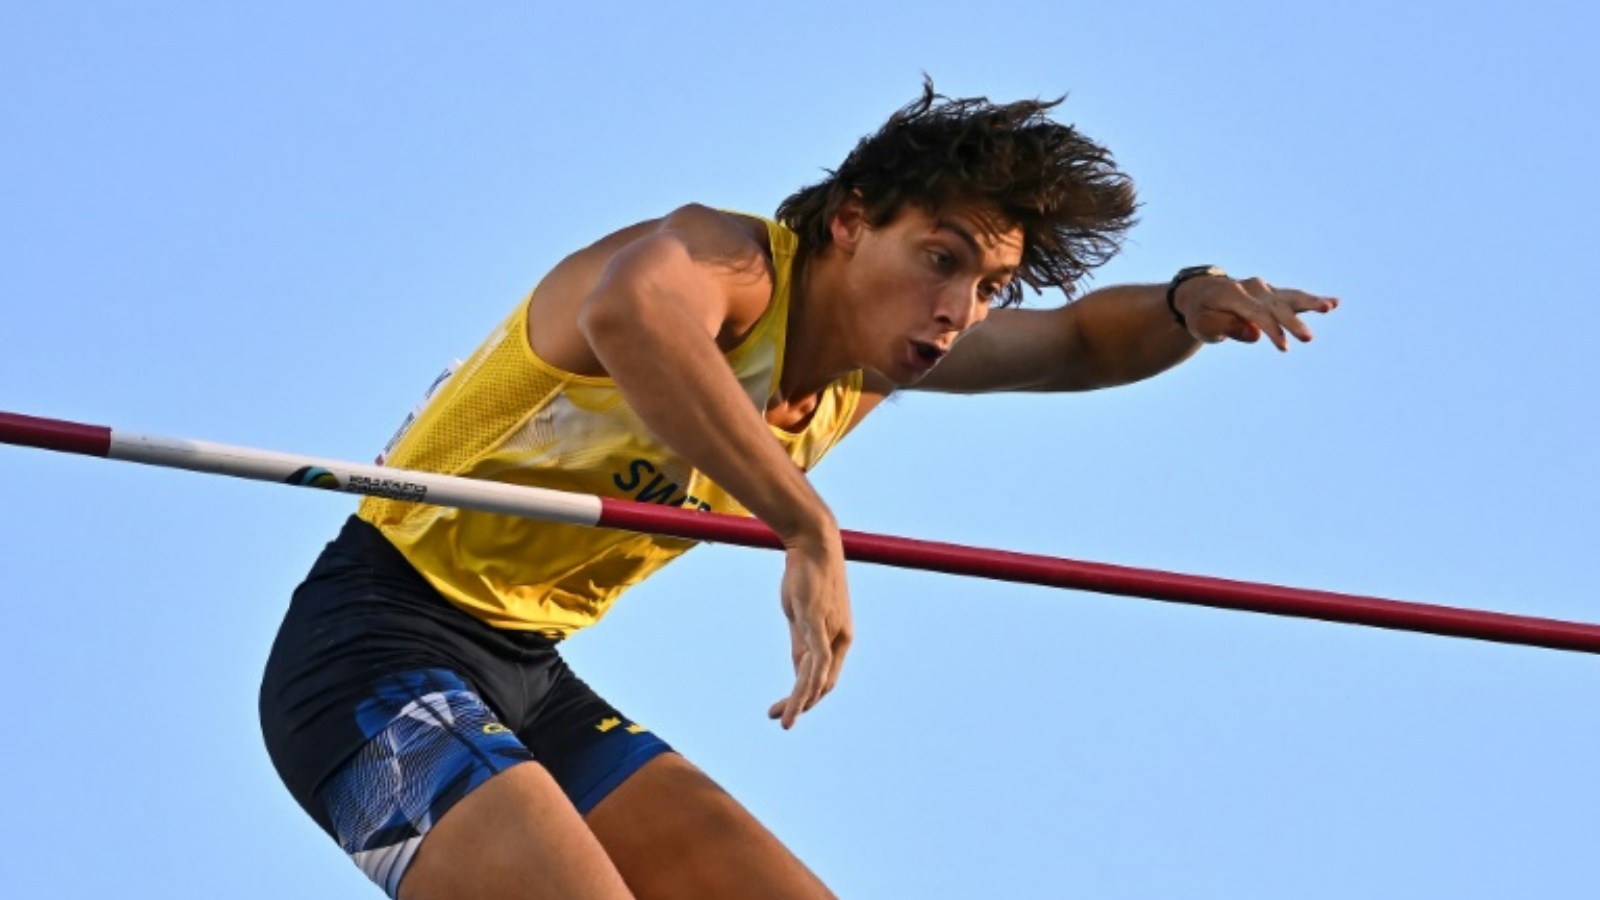 السويدي أرمان دوبلانتيس لحظة تحطيمه الرقم القياسي العالمي لمسابقة القفز بالزانة في مونديال يوجين لألعاب القوى في 24 يوليو 2022.